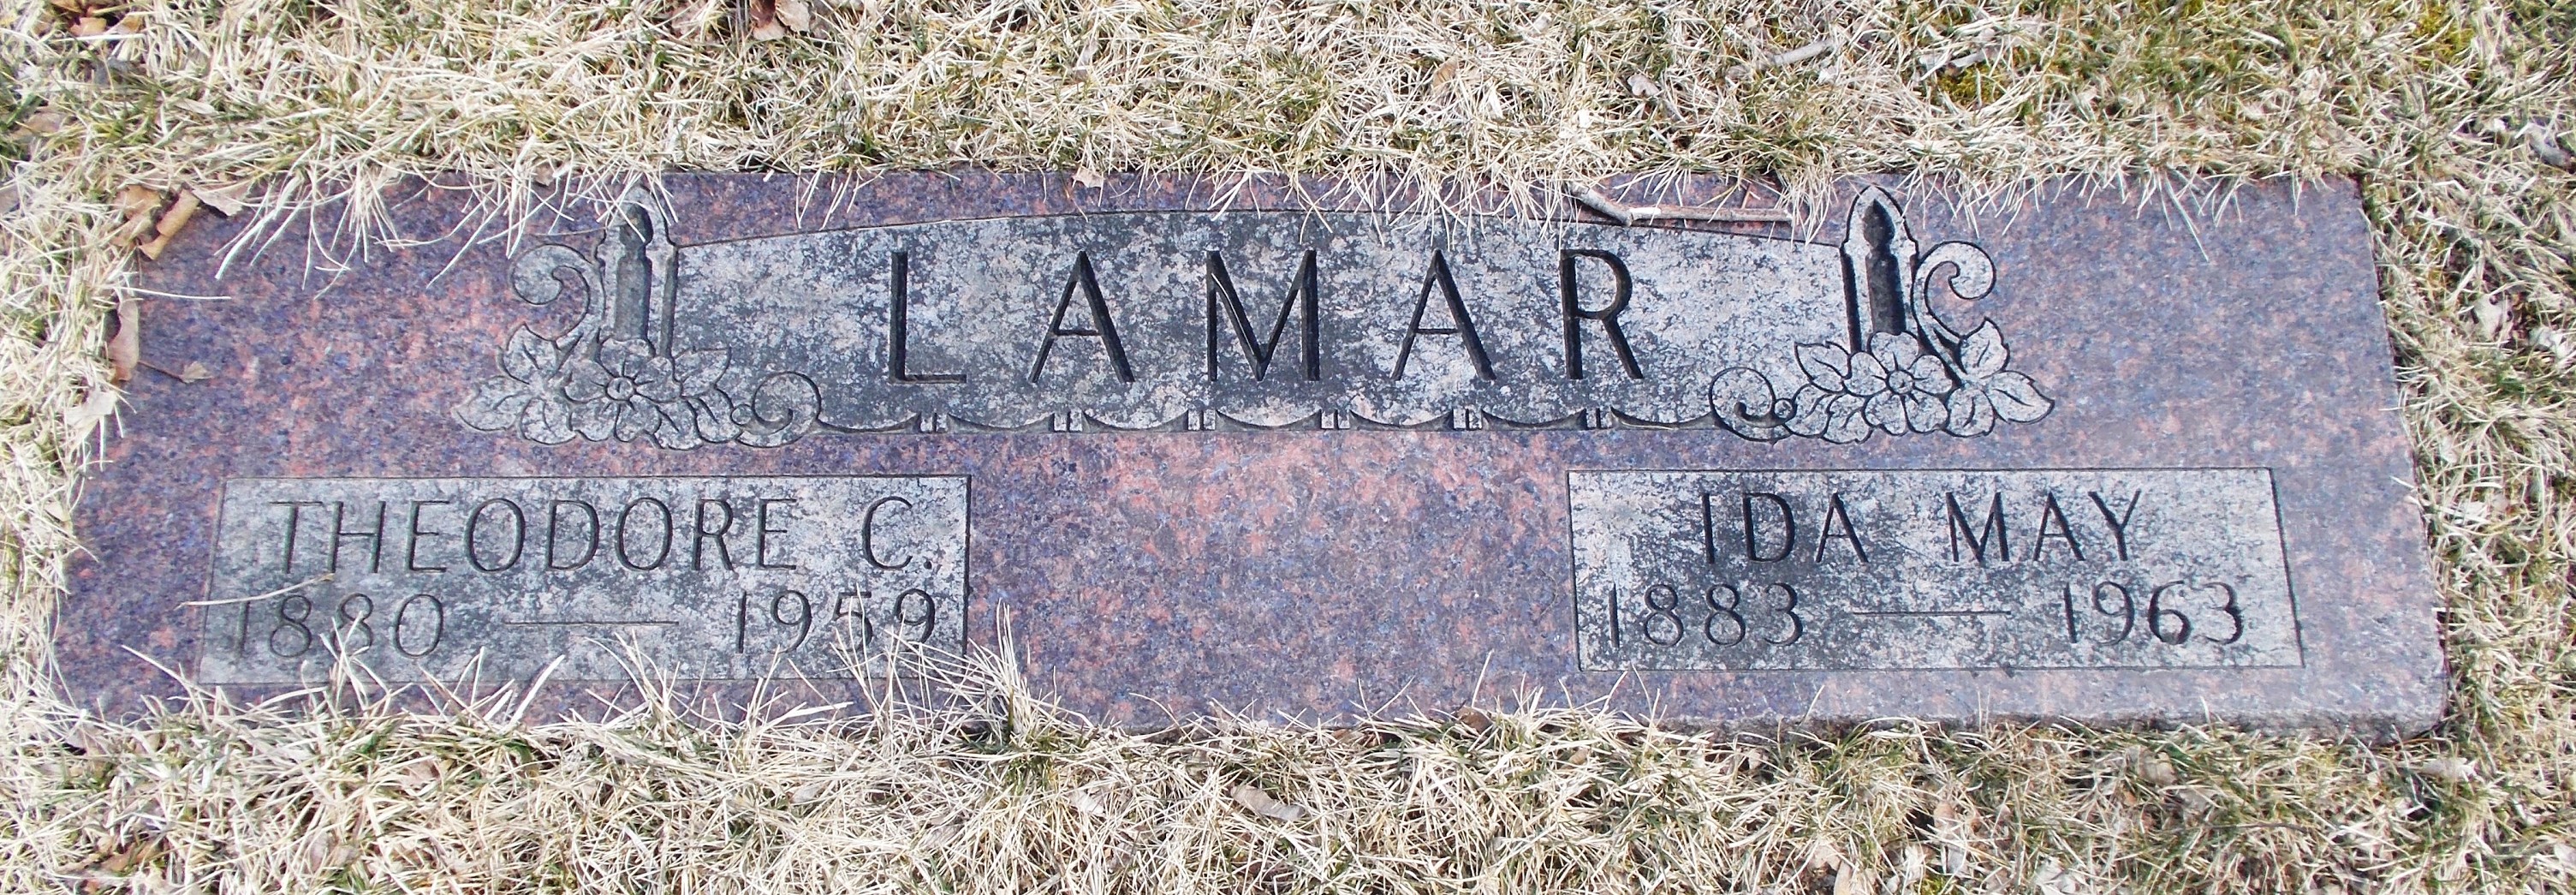 Ida May Lamar